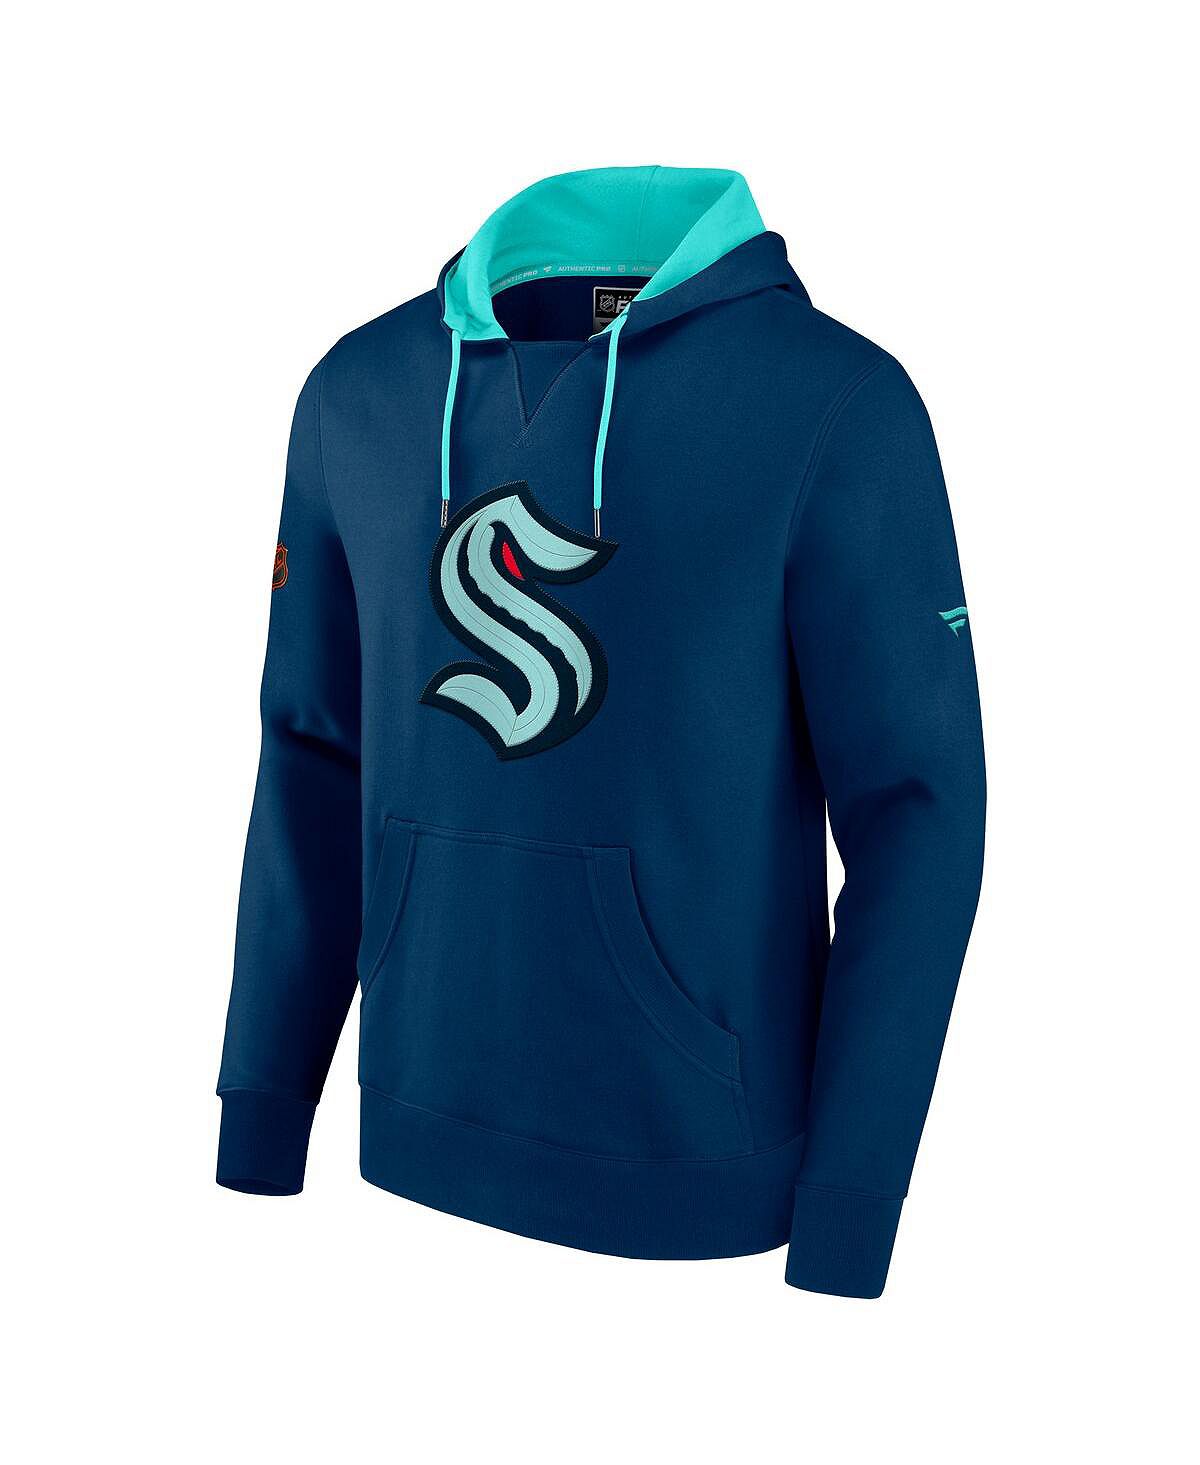 Мужской пуловер с капюшоном темно-синего и синего цвета с фирменным логотипом Seattle Kraken Special Edition 2.0 Team Fanatics